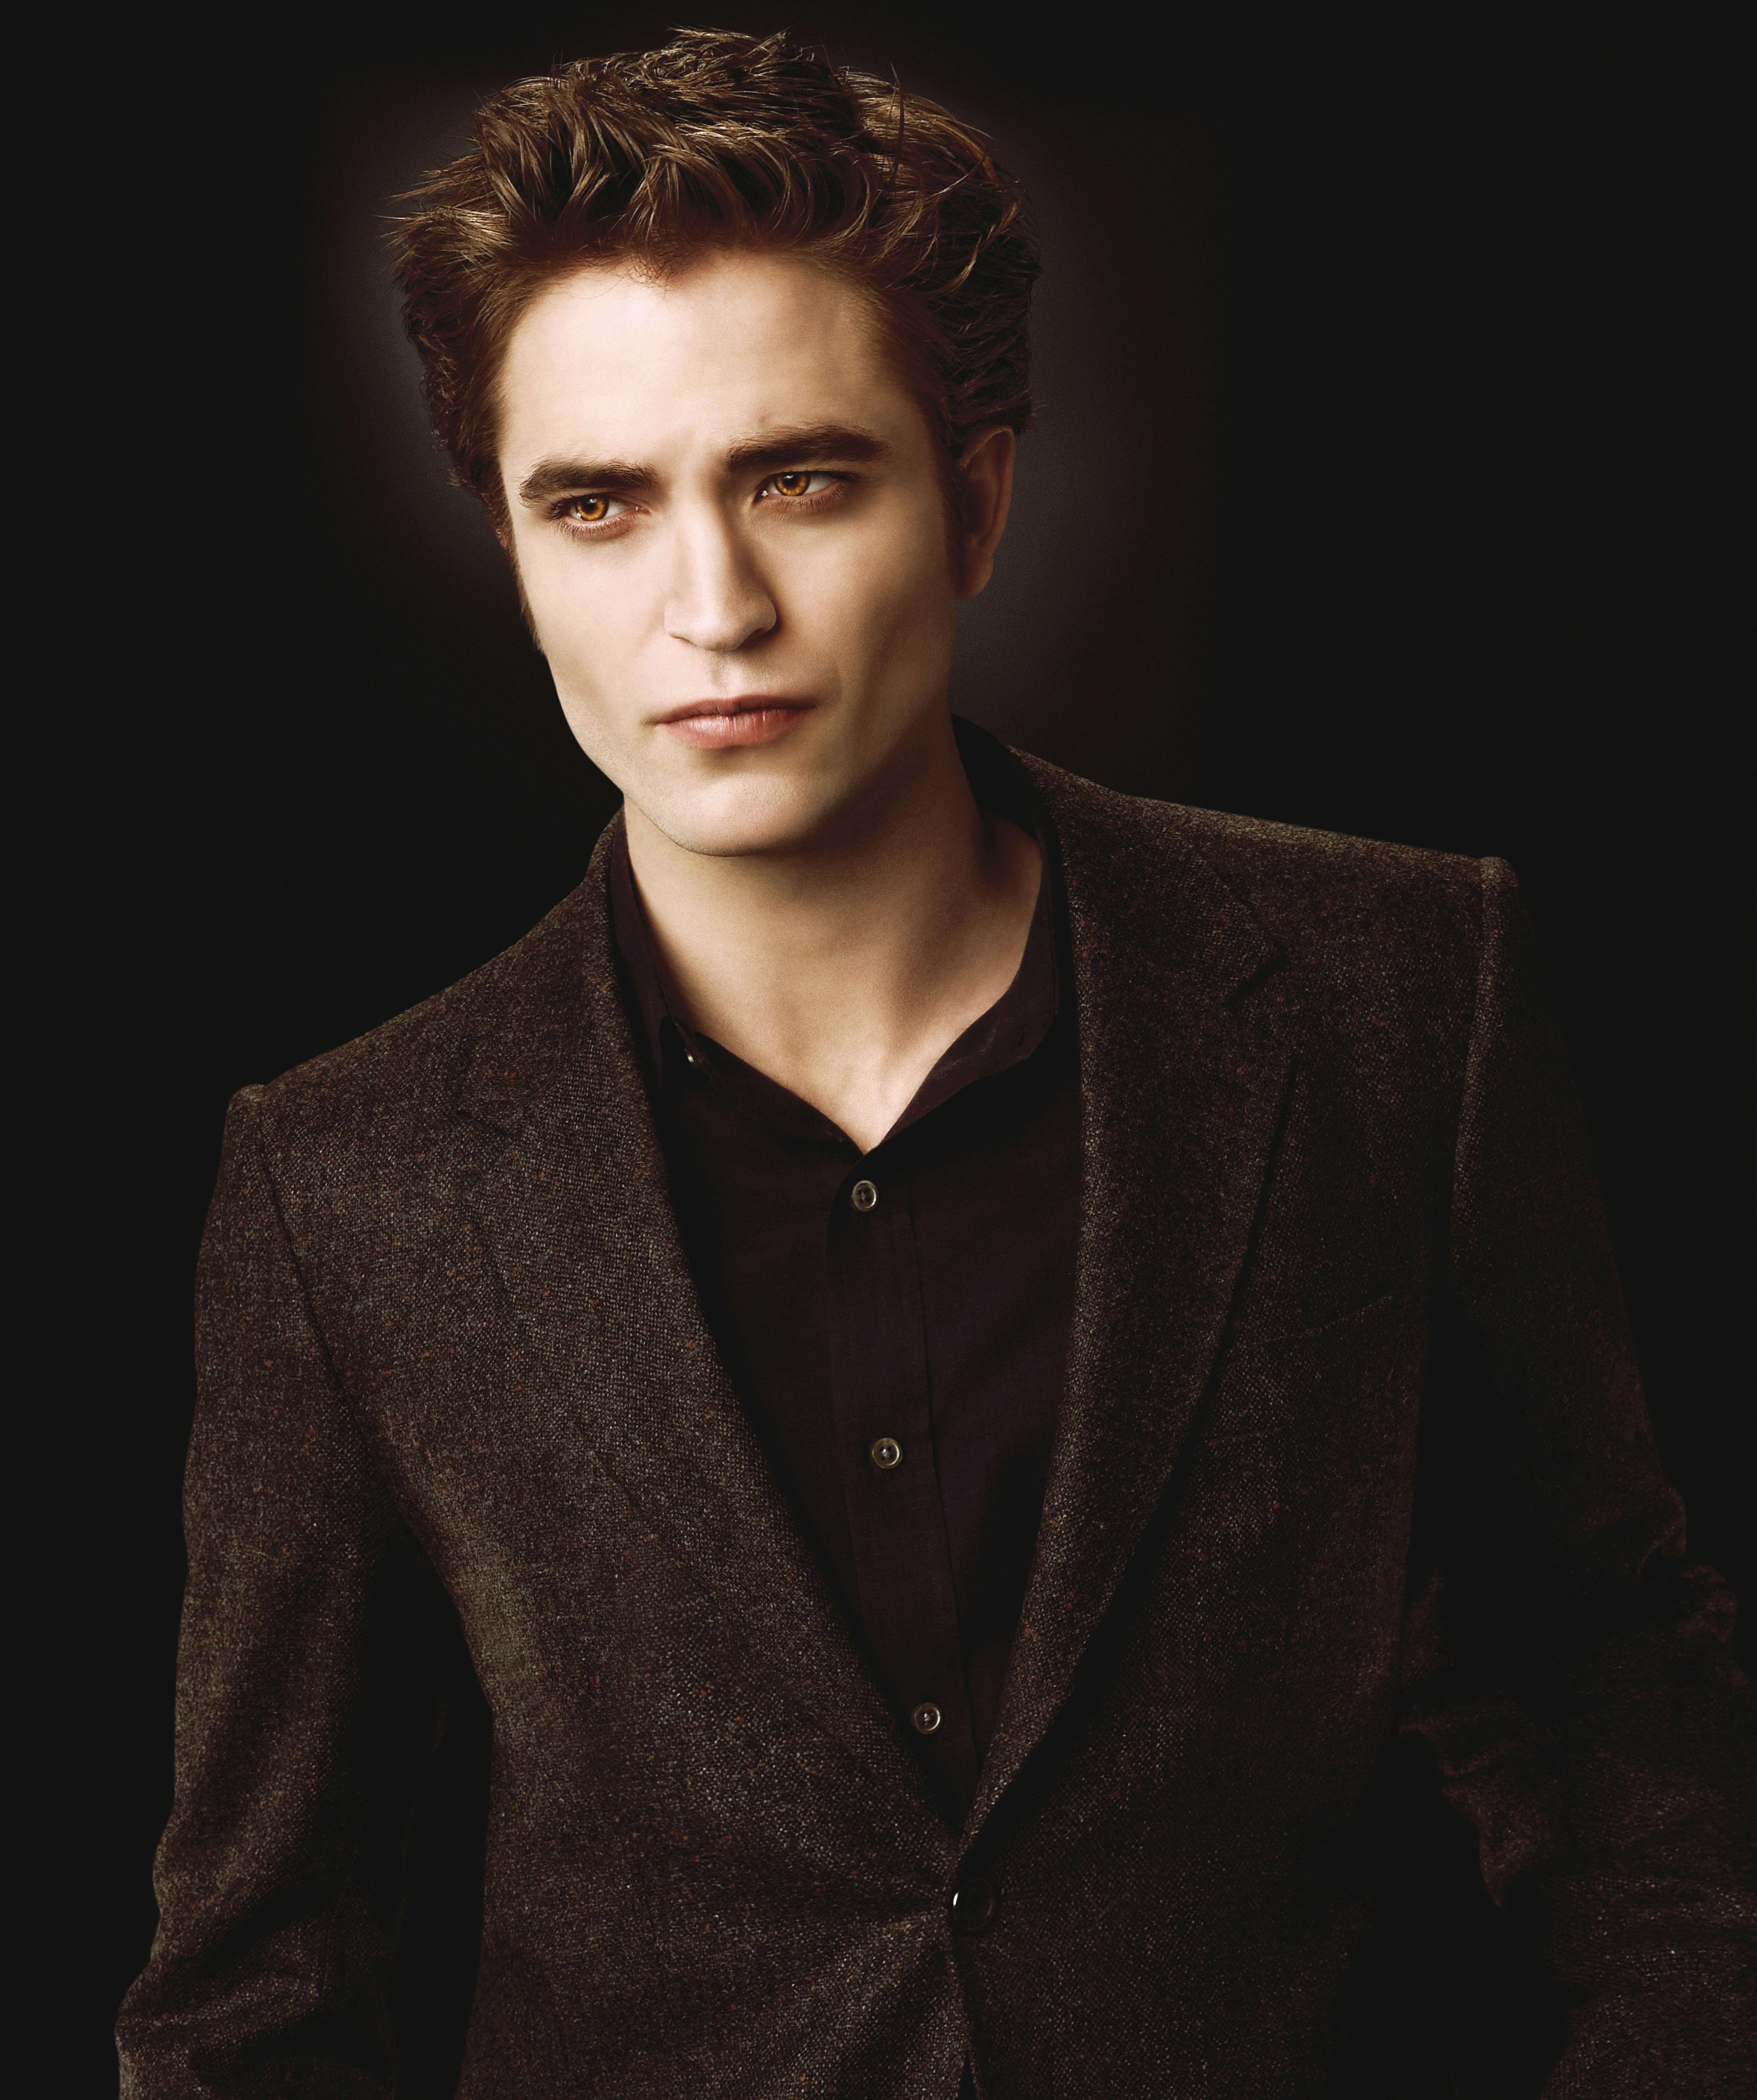 Mas De 50 Imagenes De Edward Cullen Robert Pattinson Y Otros Taringa 